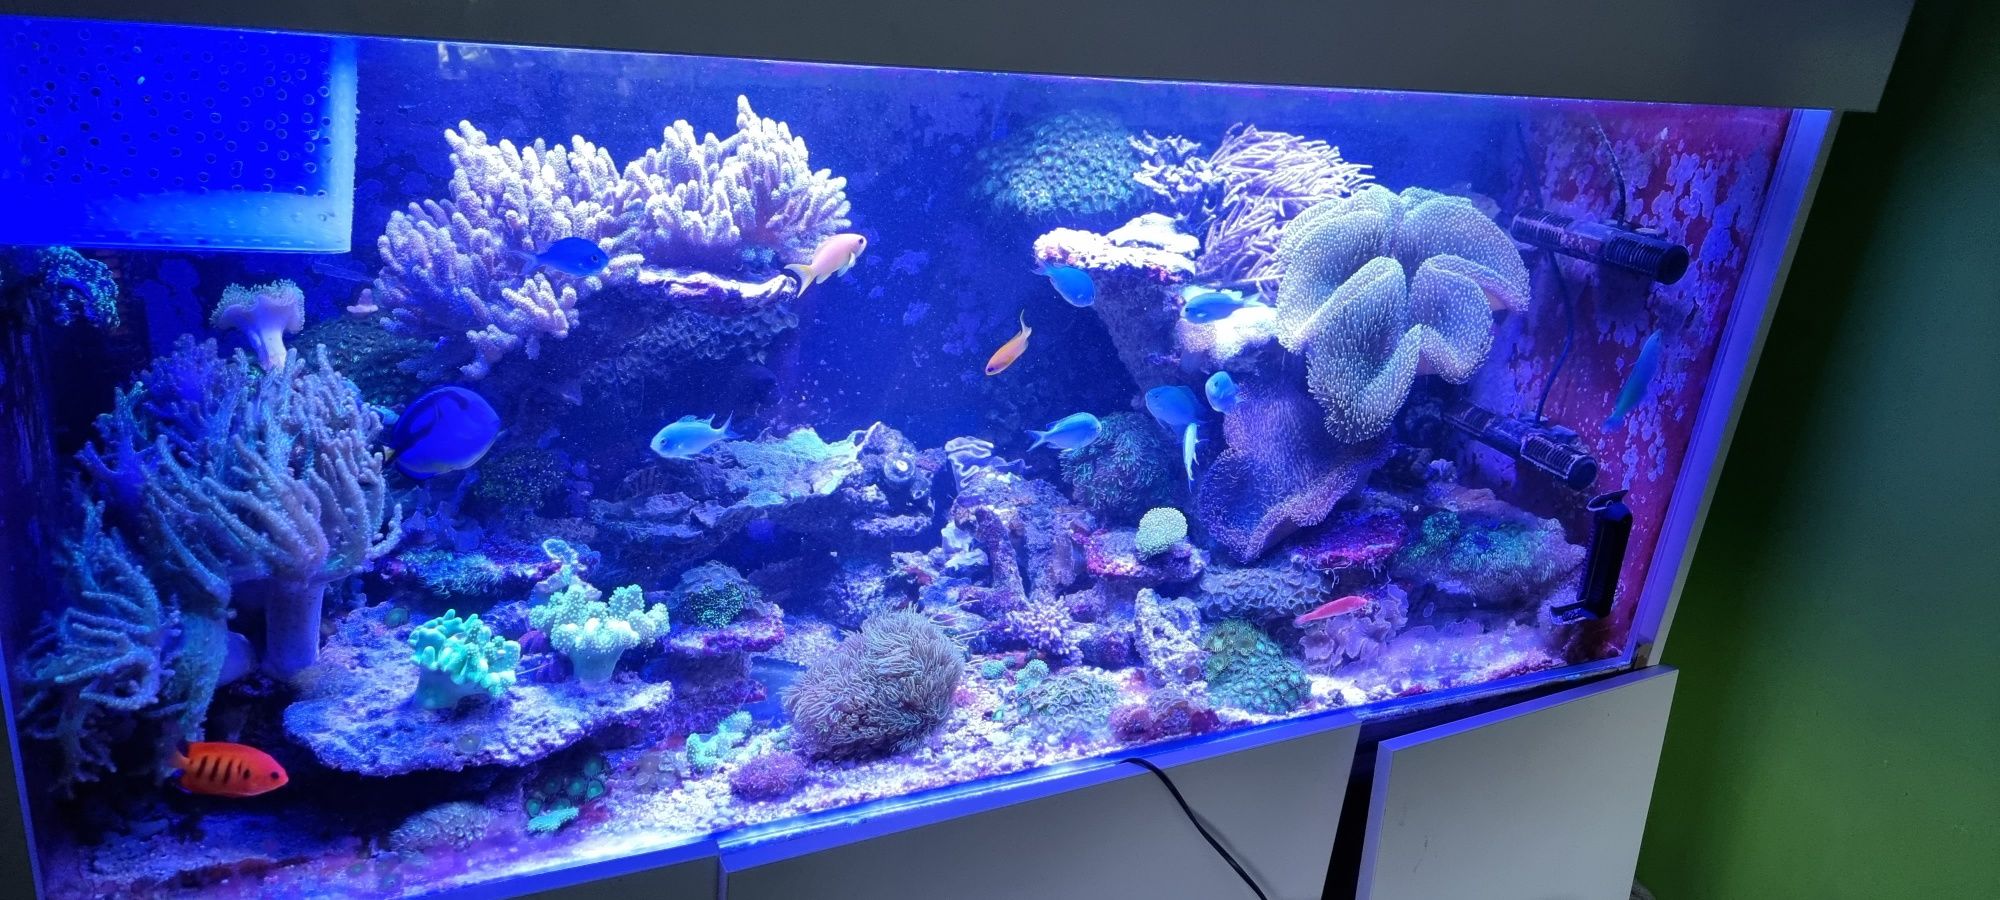 Akwarium morskie koralowce miękkie- zoanthus, sinularia, briareum